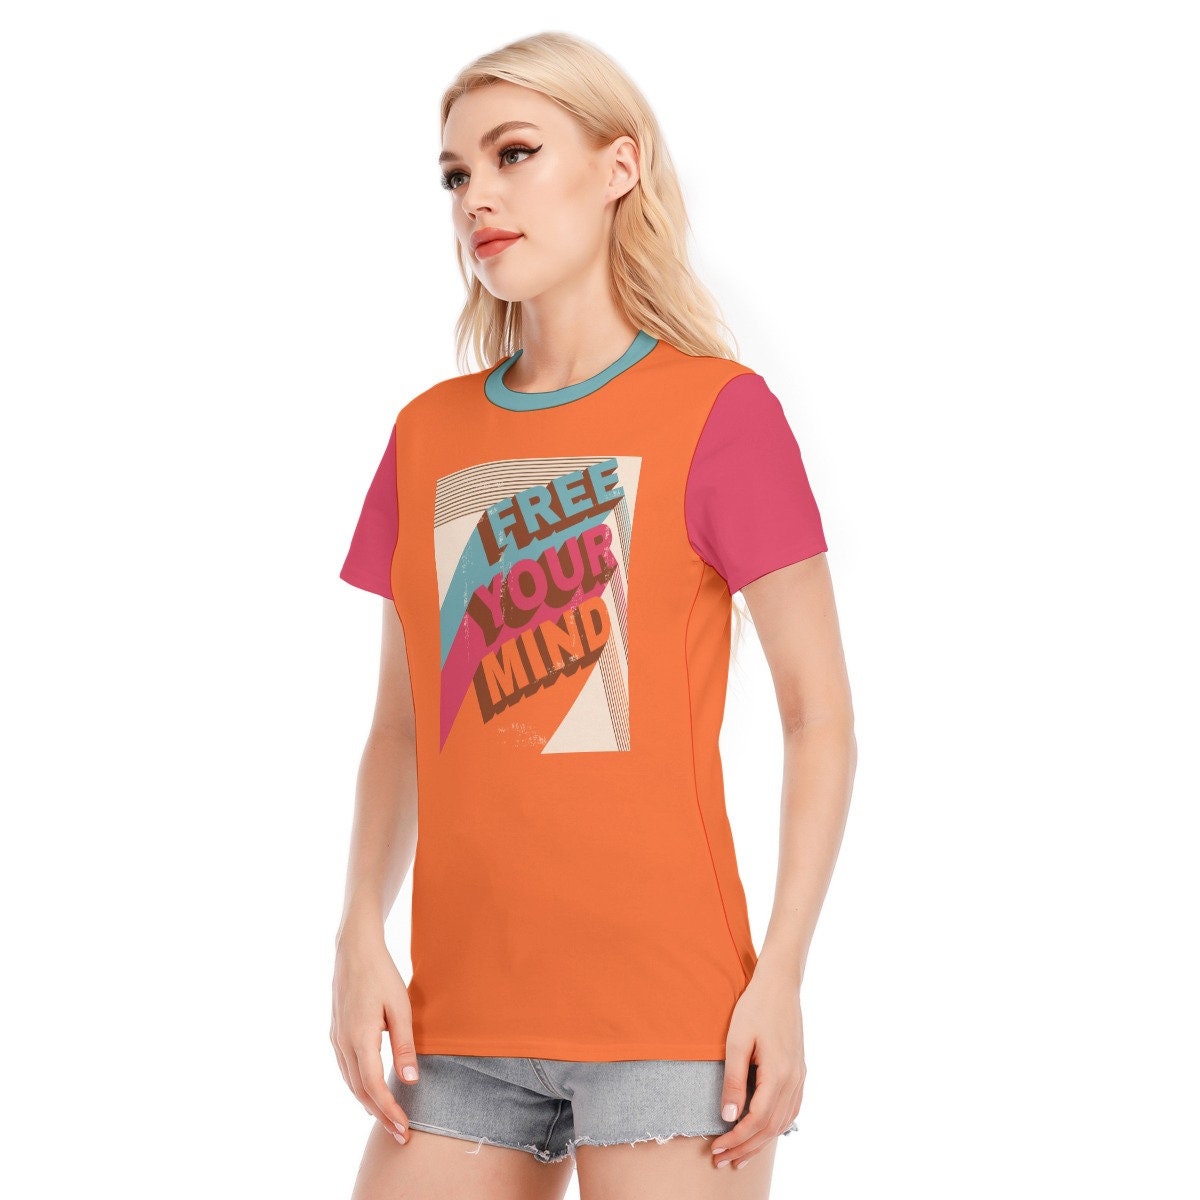 Retro T-shirt, Words Tshirts, Vintage Words Tshirt, Orange Words T-shirt, Hippie Tshirt Women, Vintage Style Orange T-shirt, Unique Tshirt